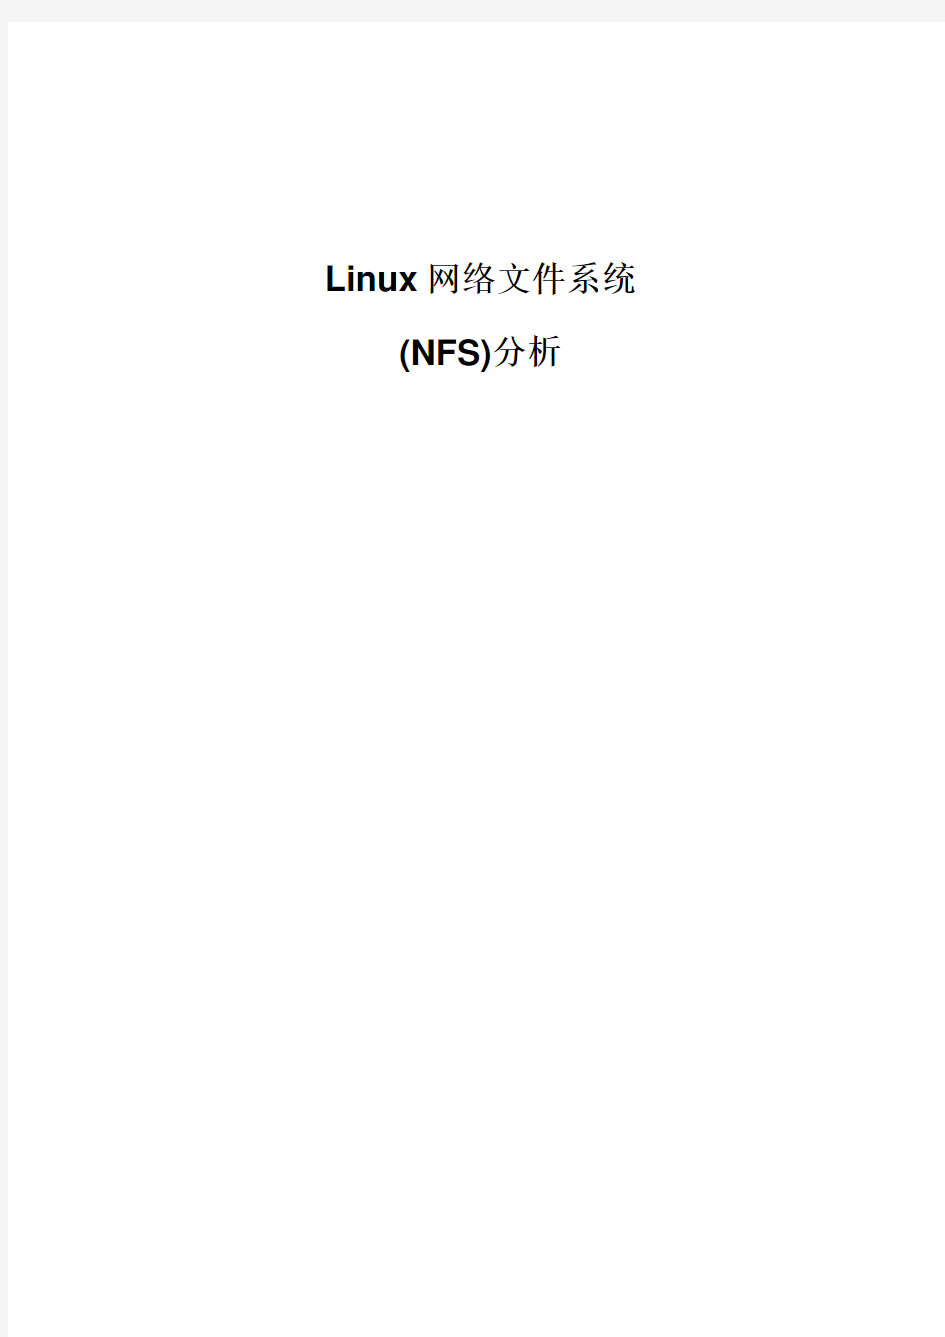 Linux网络文件系统(NFS)分析